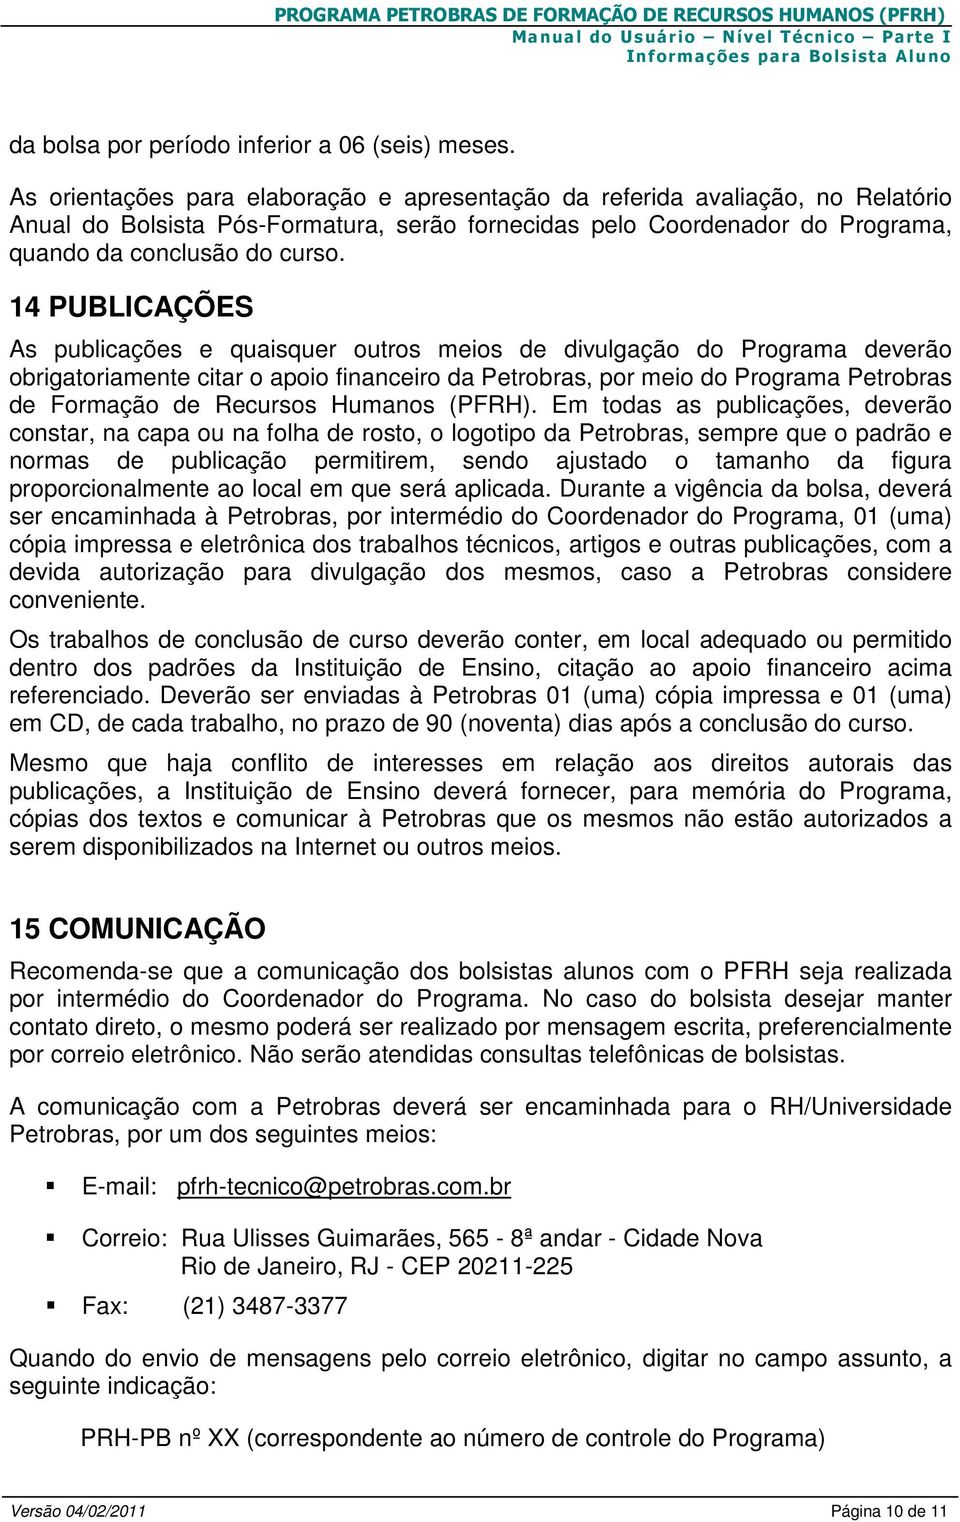 14 PUBLICAÇÕES As publicações e quaisquer outros meios de divulgação do Programa deverão obrigatoriamente citar o apoio financeiro da Petrobras, por meio do Programa Petrobras de Formação de Recursos